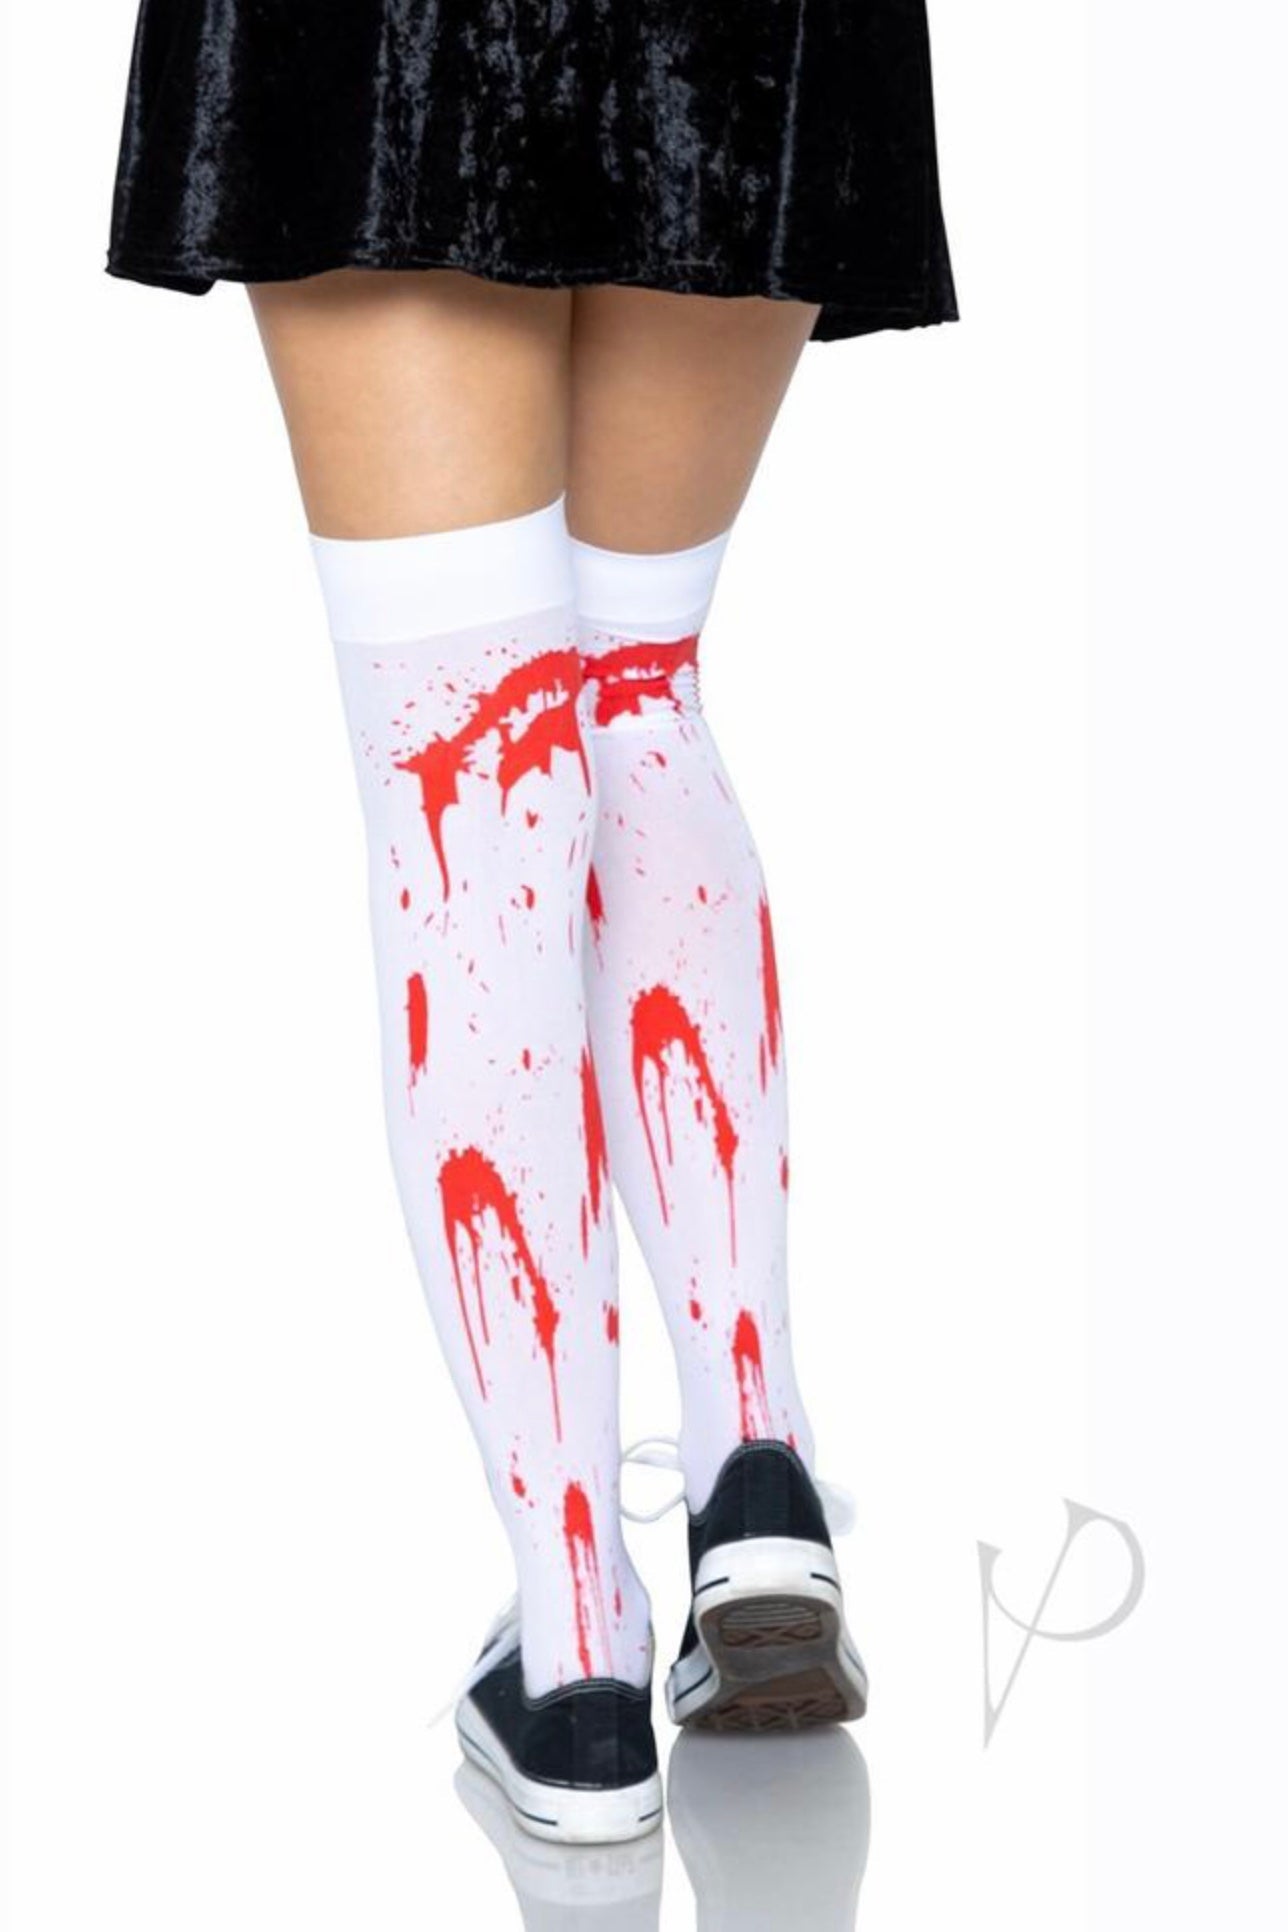 Bloody Zombie Thigh High - CurvynBeautiful 